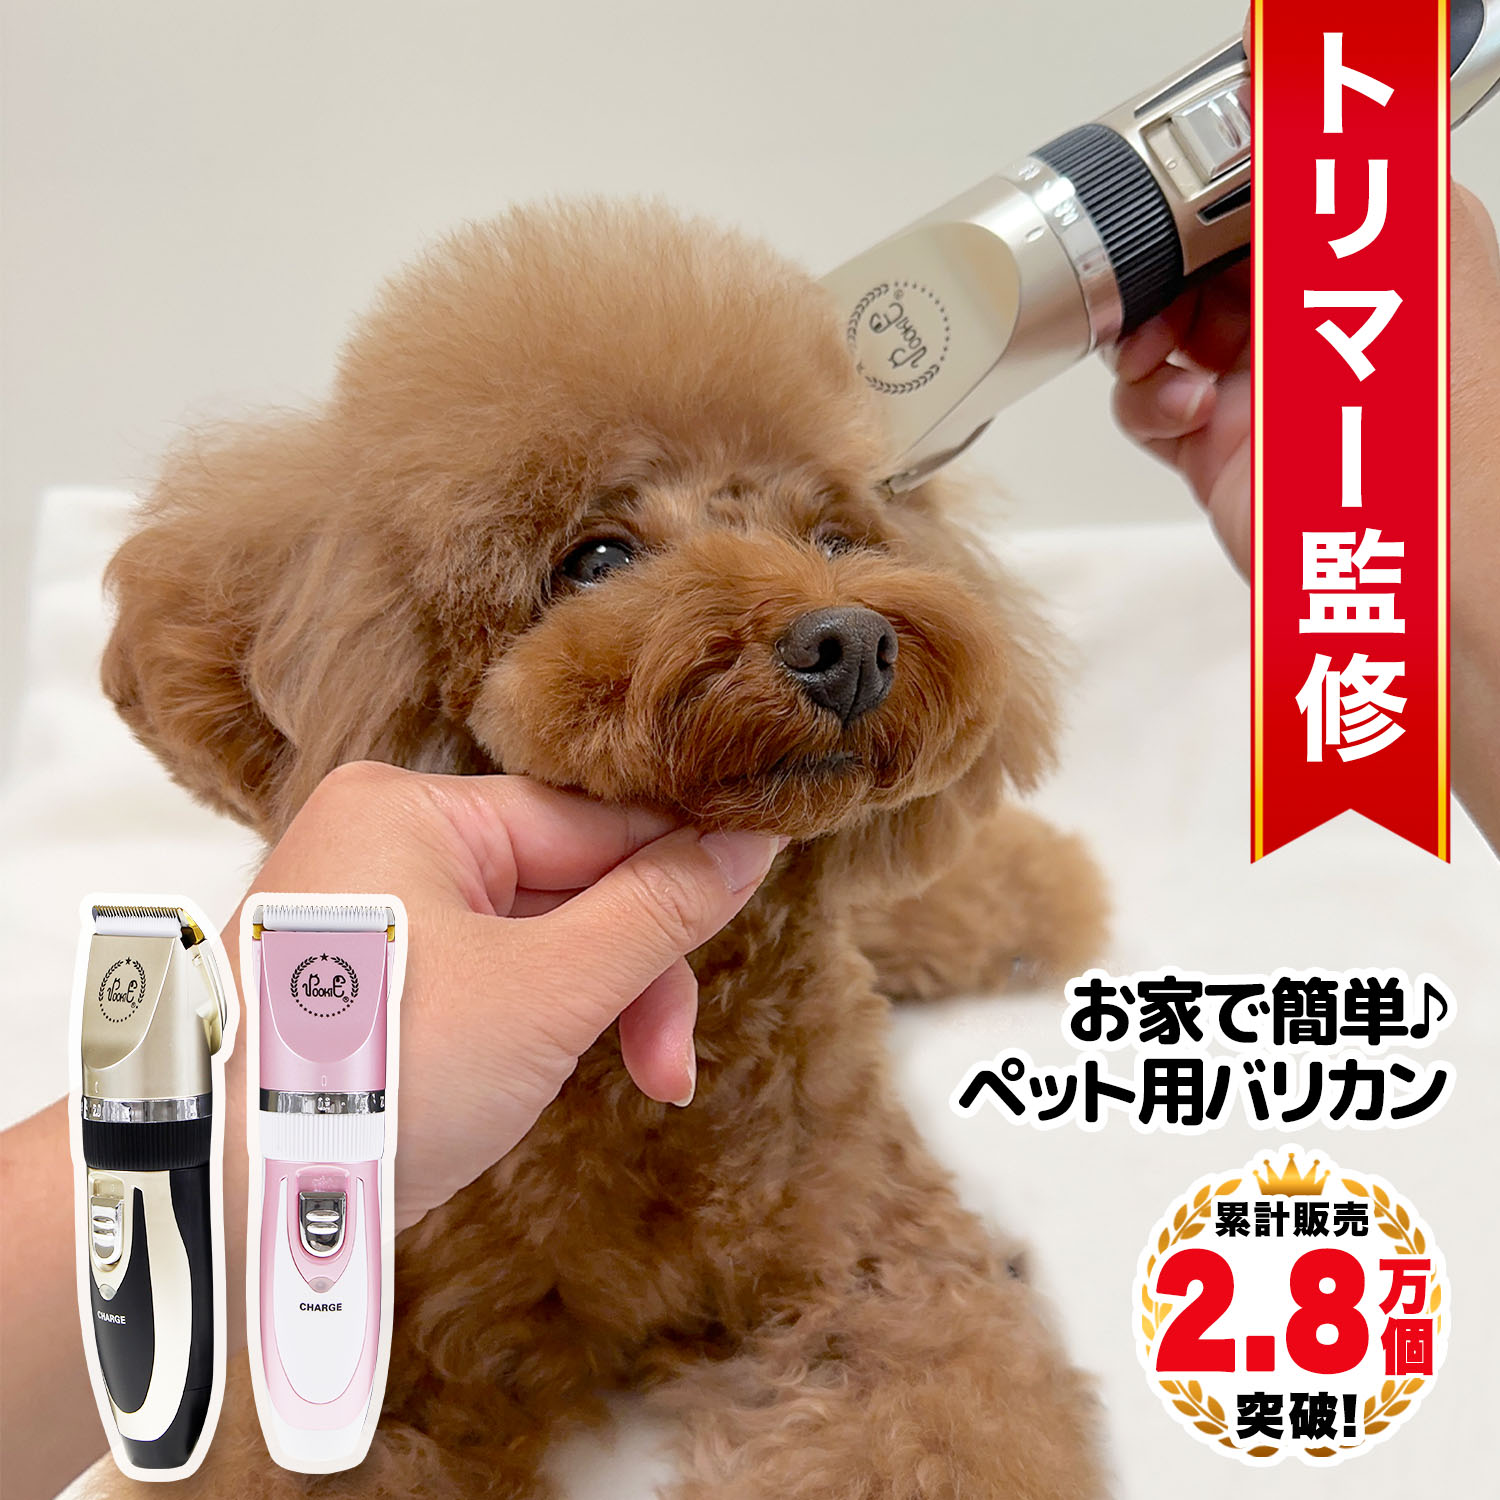 バリカン 犬用 犬 猫 ペット コードレス トリミング 日本語説明書付 24